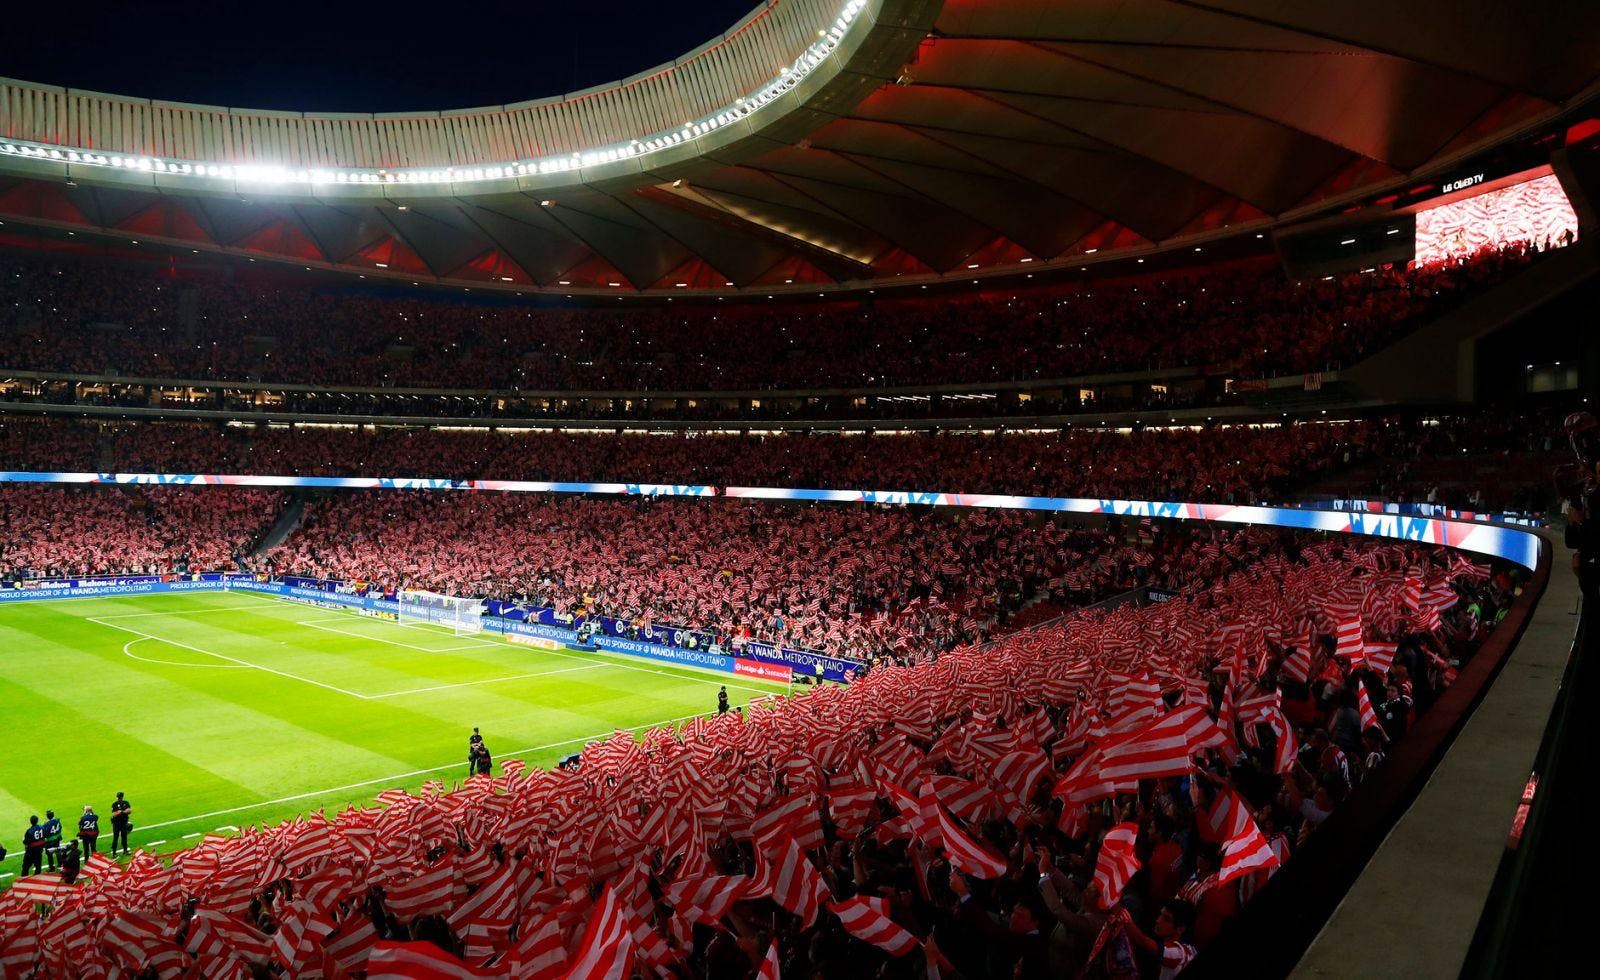 Club Atlético de Madrid v Getafe CF - VIP Hospitality Tickets